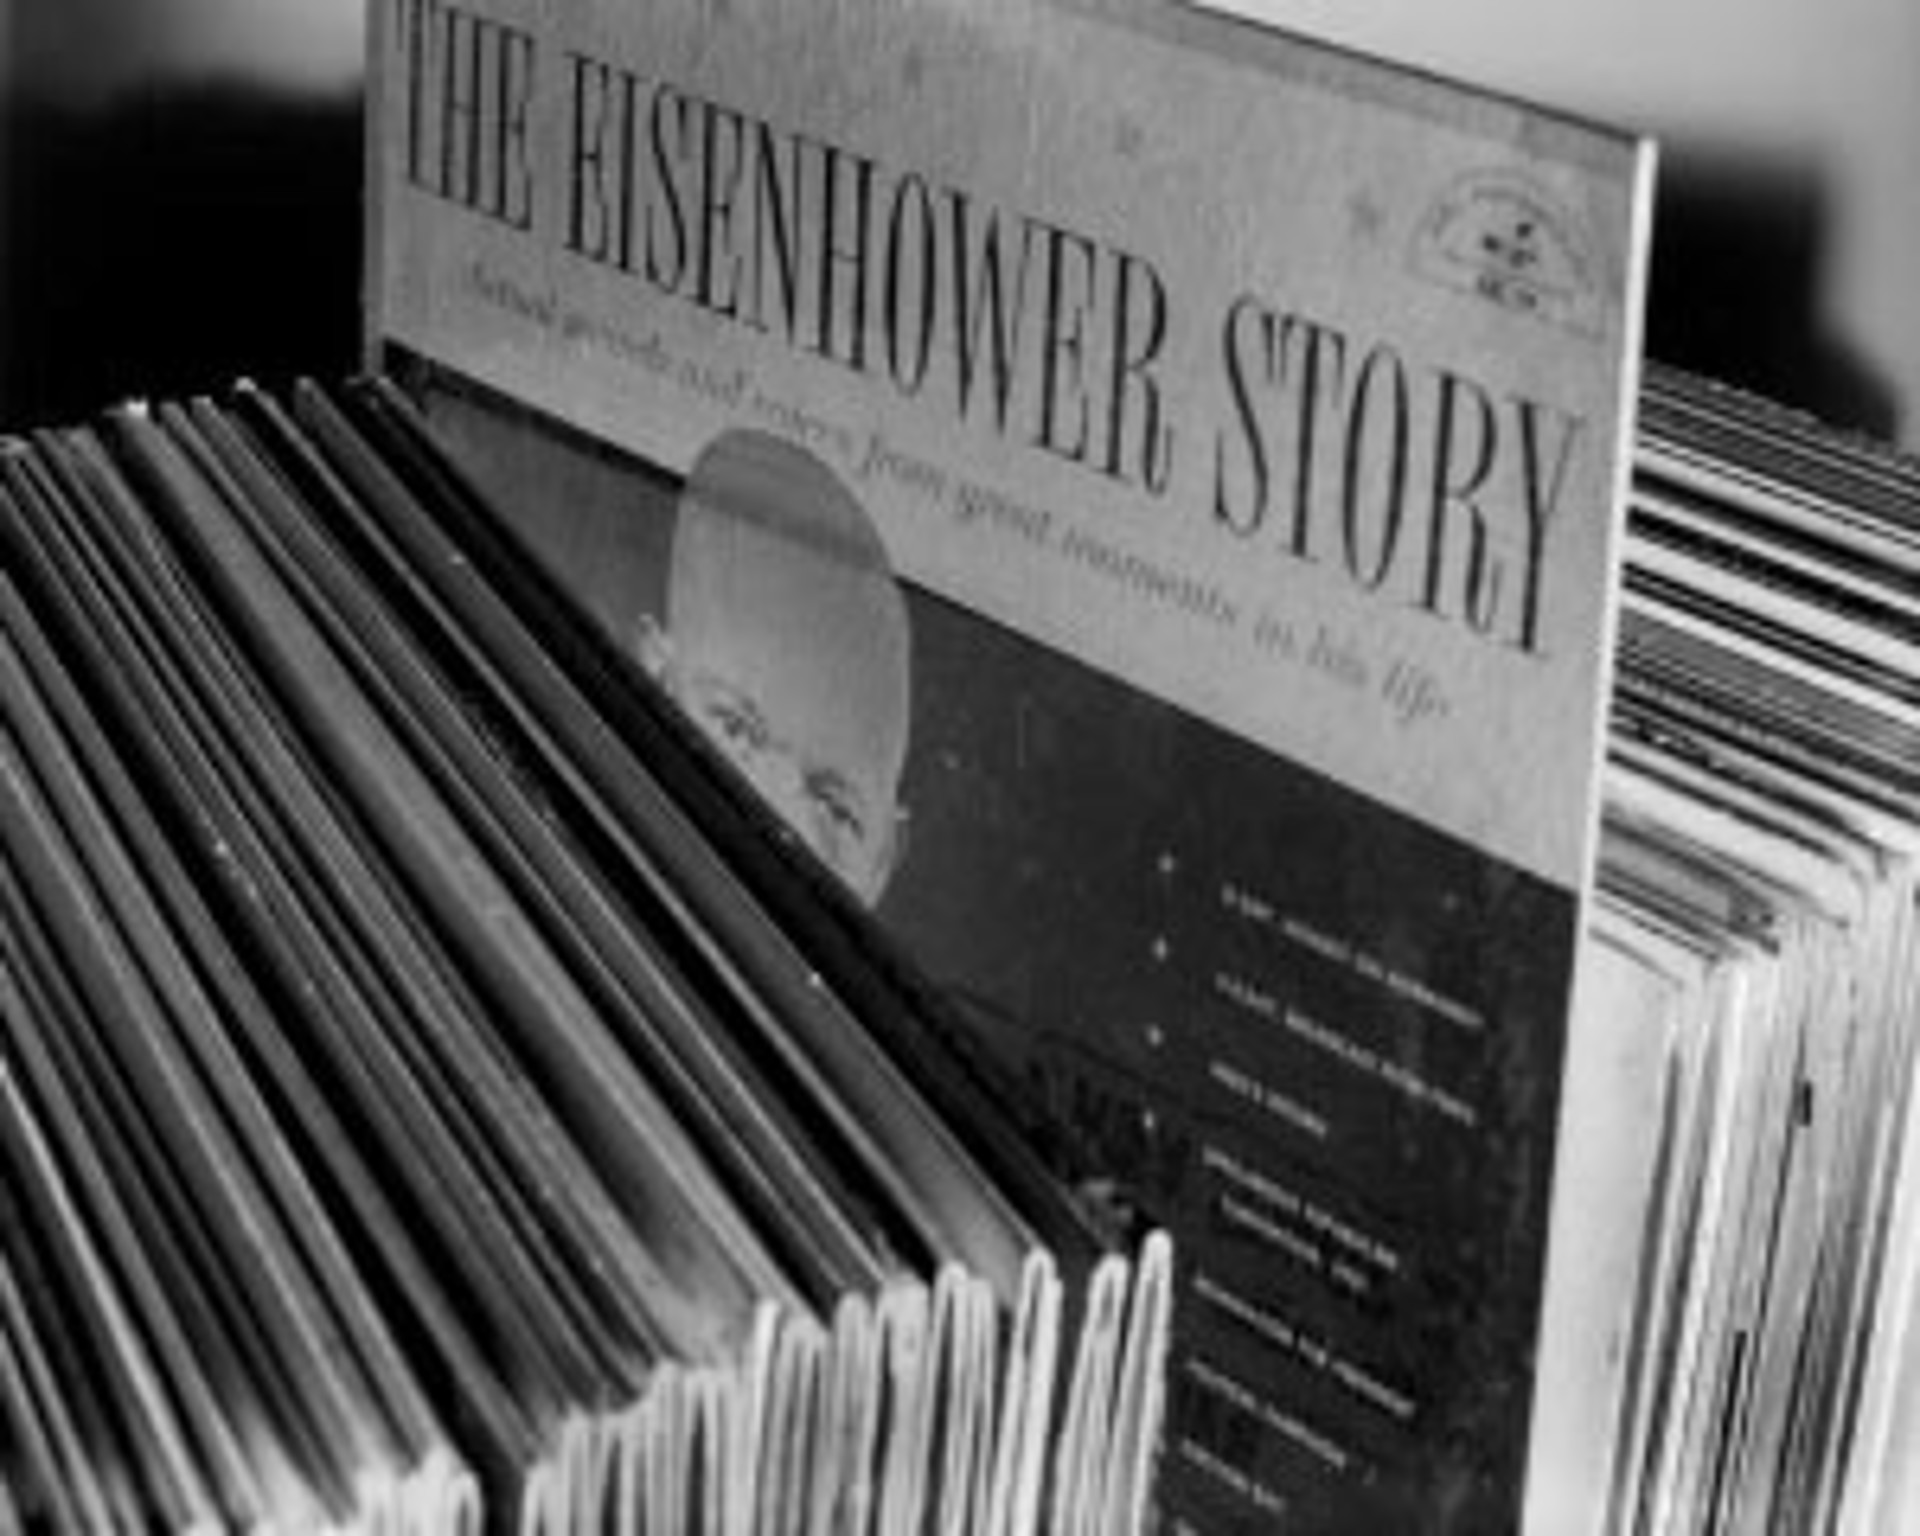 The Eisenhower Story by Glen Scheffer